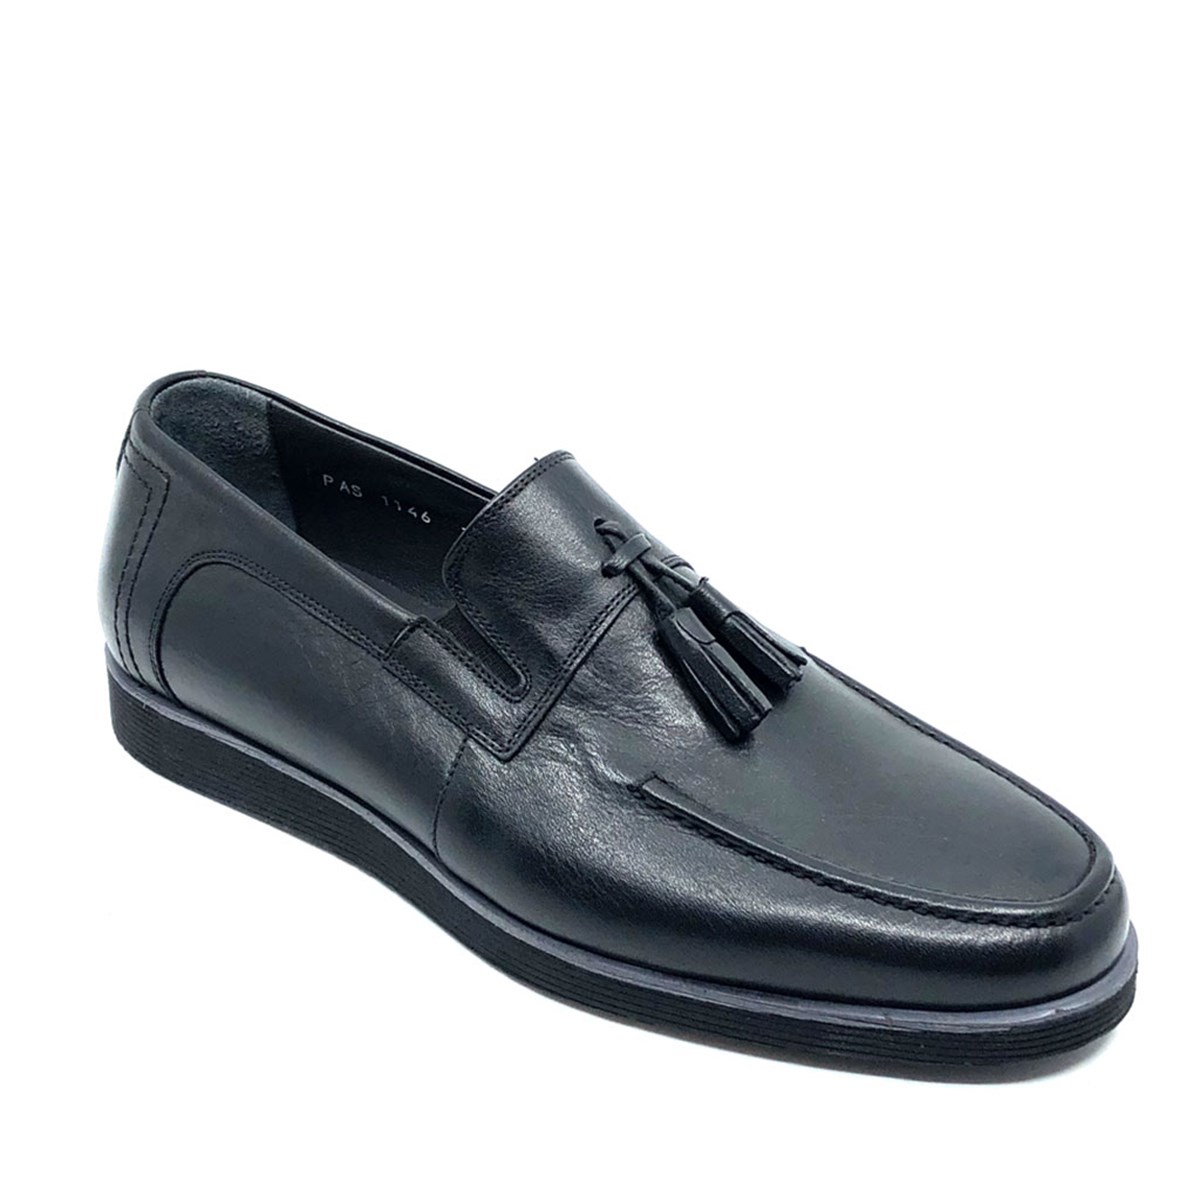 Erkek Günlük Bağcıksız Ultra Hafif Hakiki Deri Ayakkabı, Renk: Siyah, Beden: 39